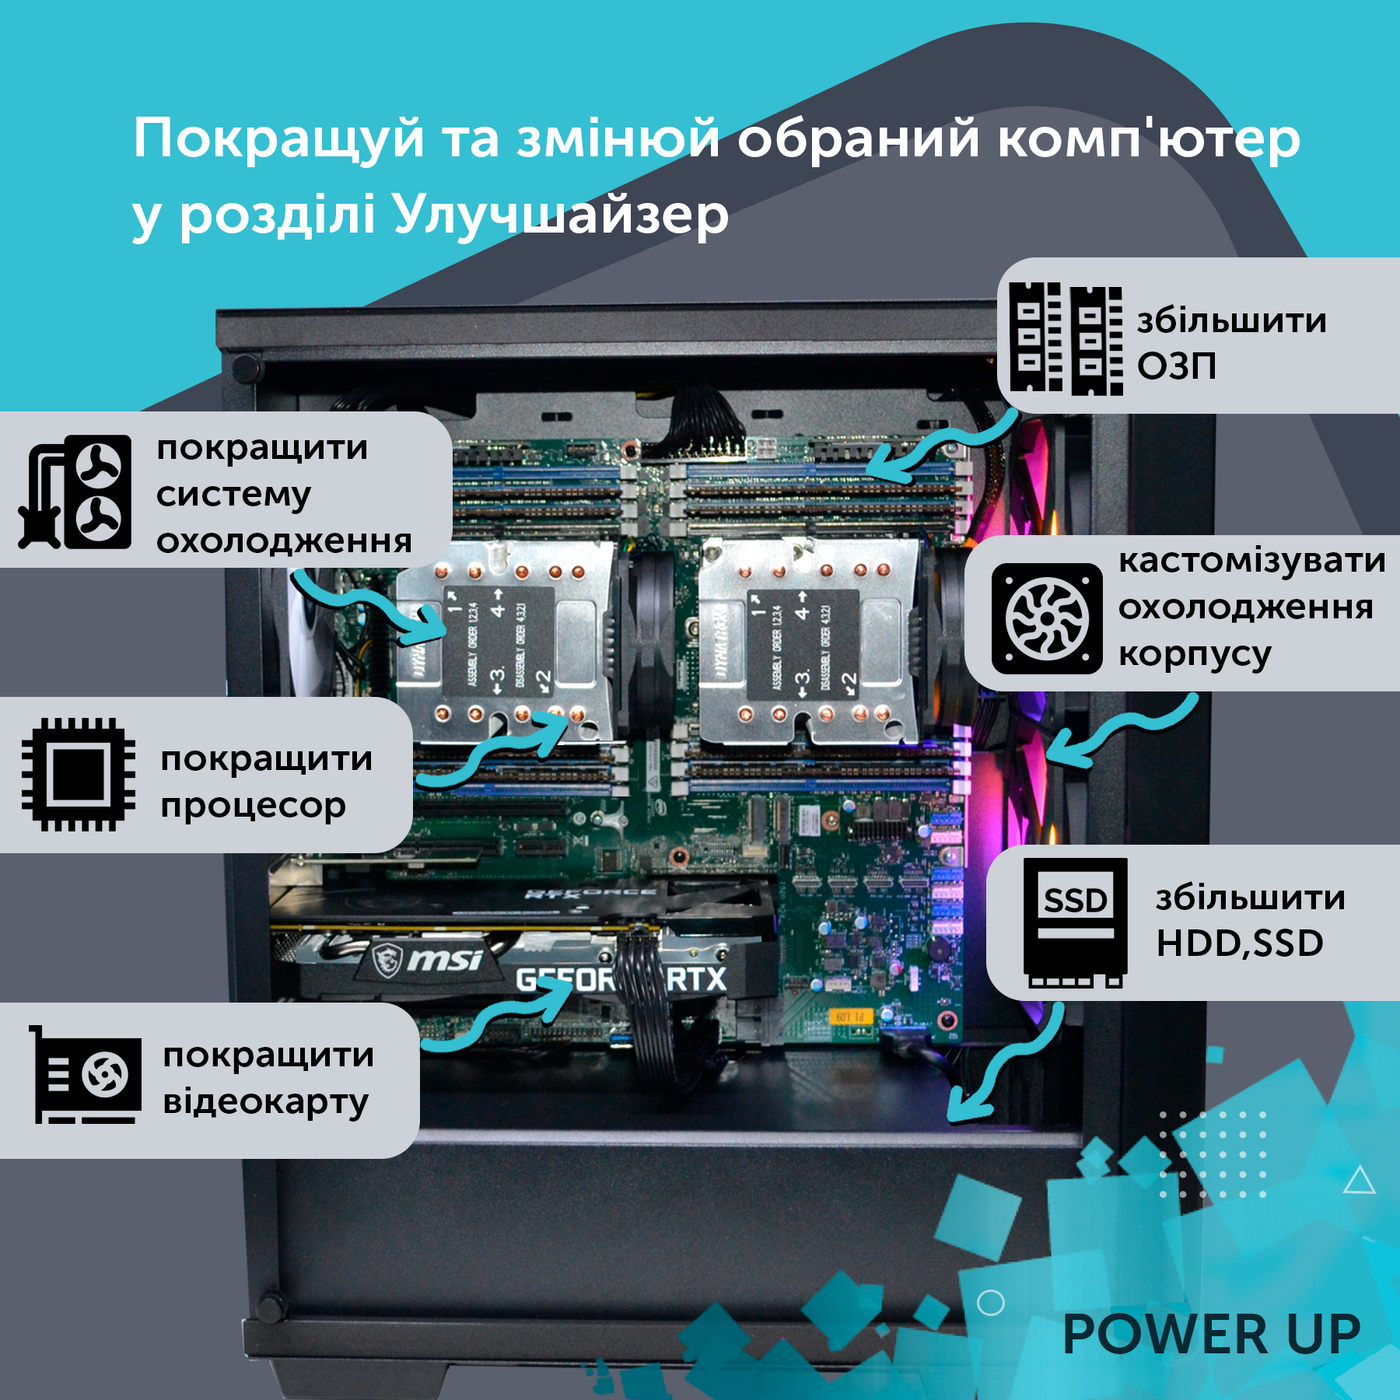 Робоча станція PowerUp Desktop #313 Core i7 14700K/64GB/HDD 1TB/SSD 512GB/GeForce RTX 3060 12GB